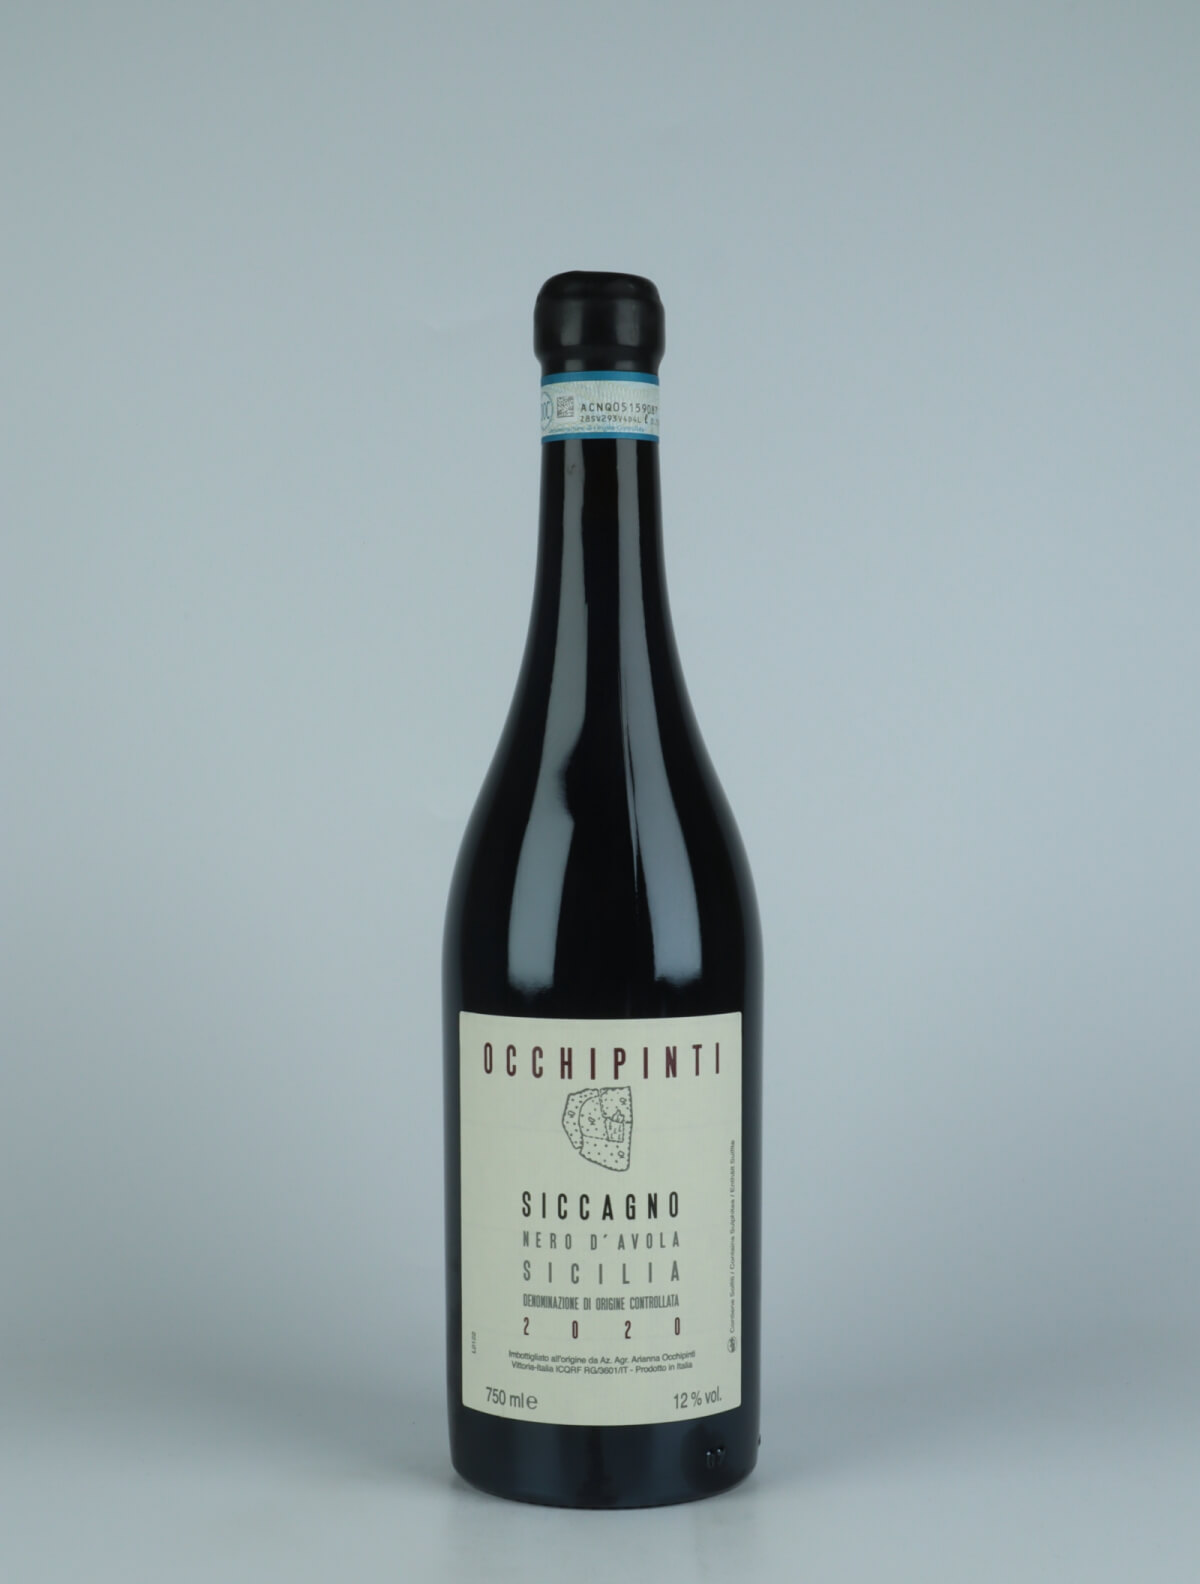 En flaske 2020 Siccagno Rødvin fra Arianna Occhipinti, Sicilien i Italien